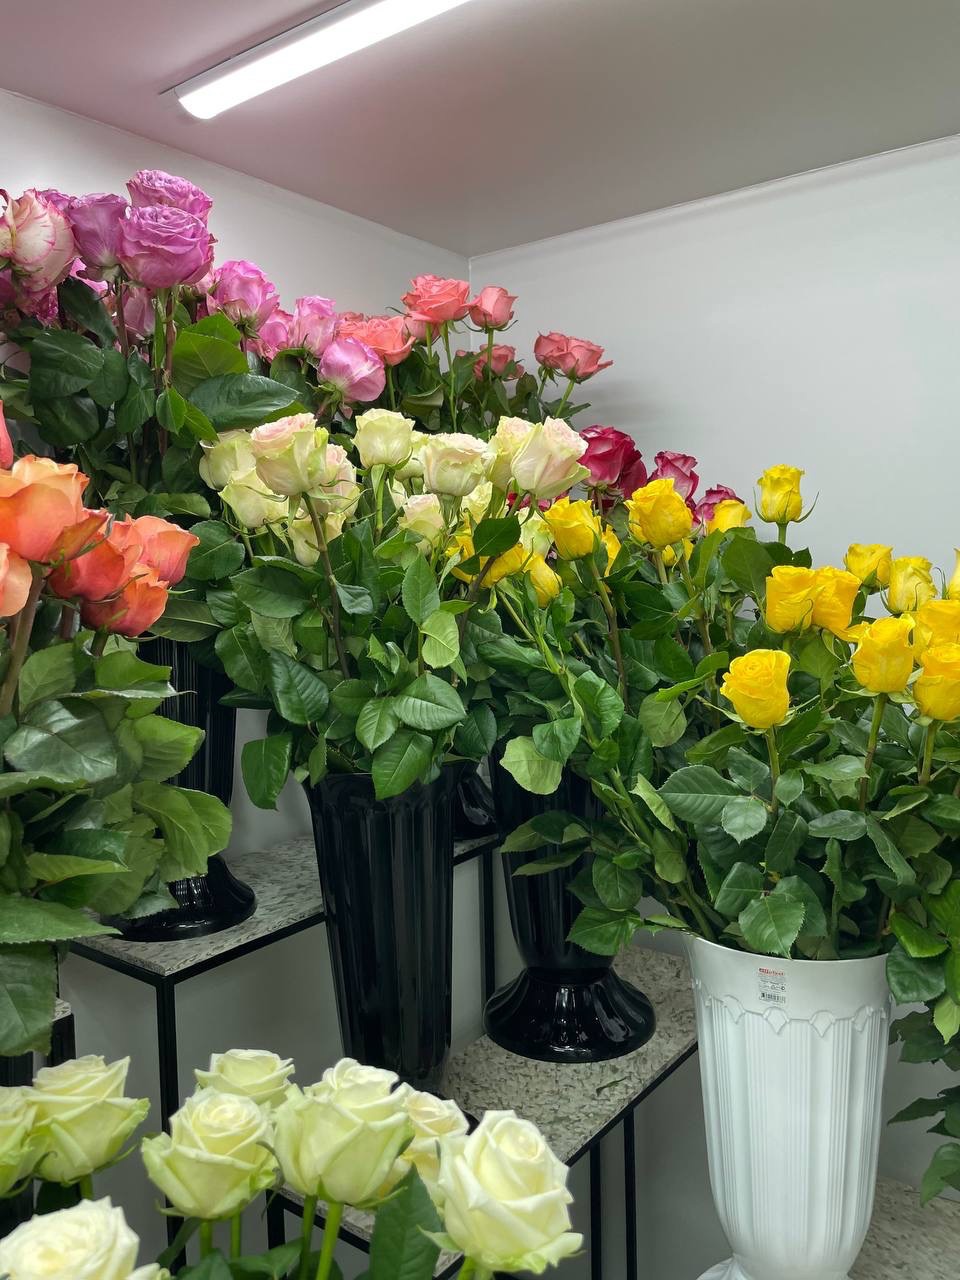 Розы Эквадор в ассортименте - 220 ₽, заказать онлайн.